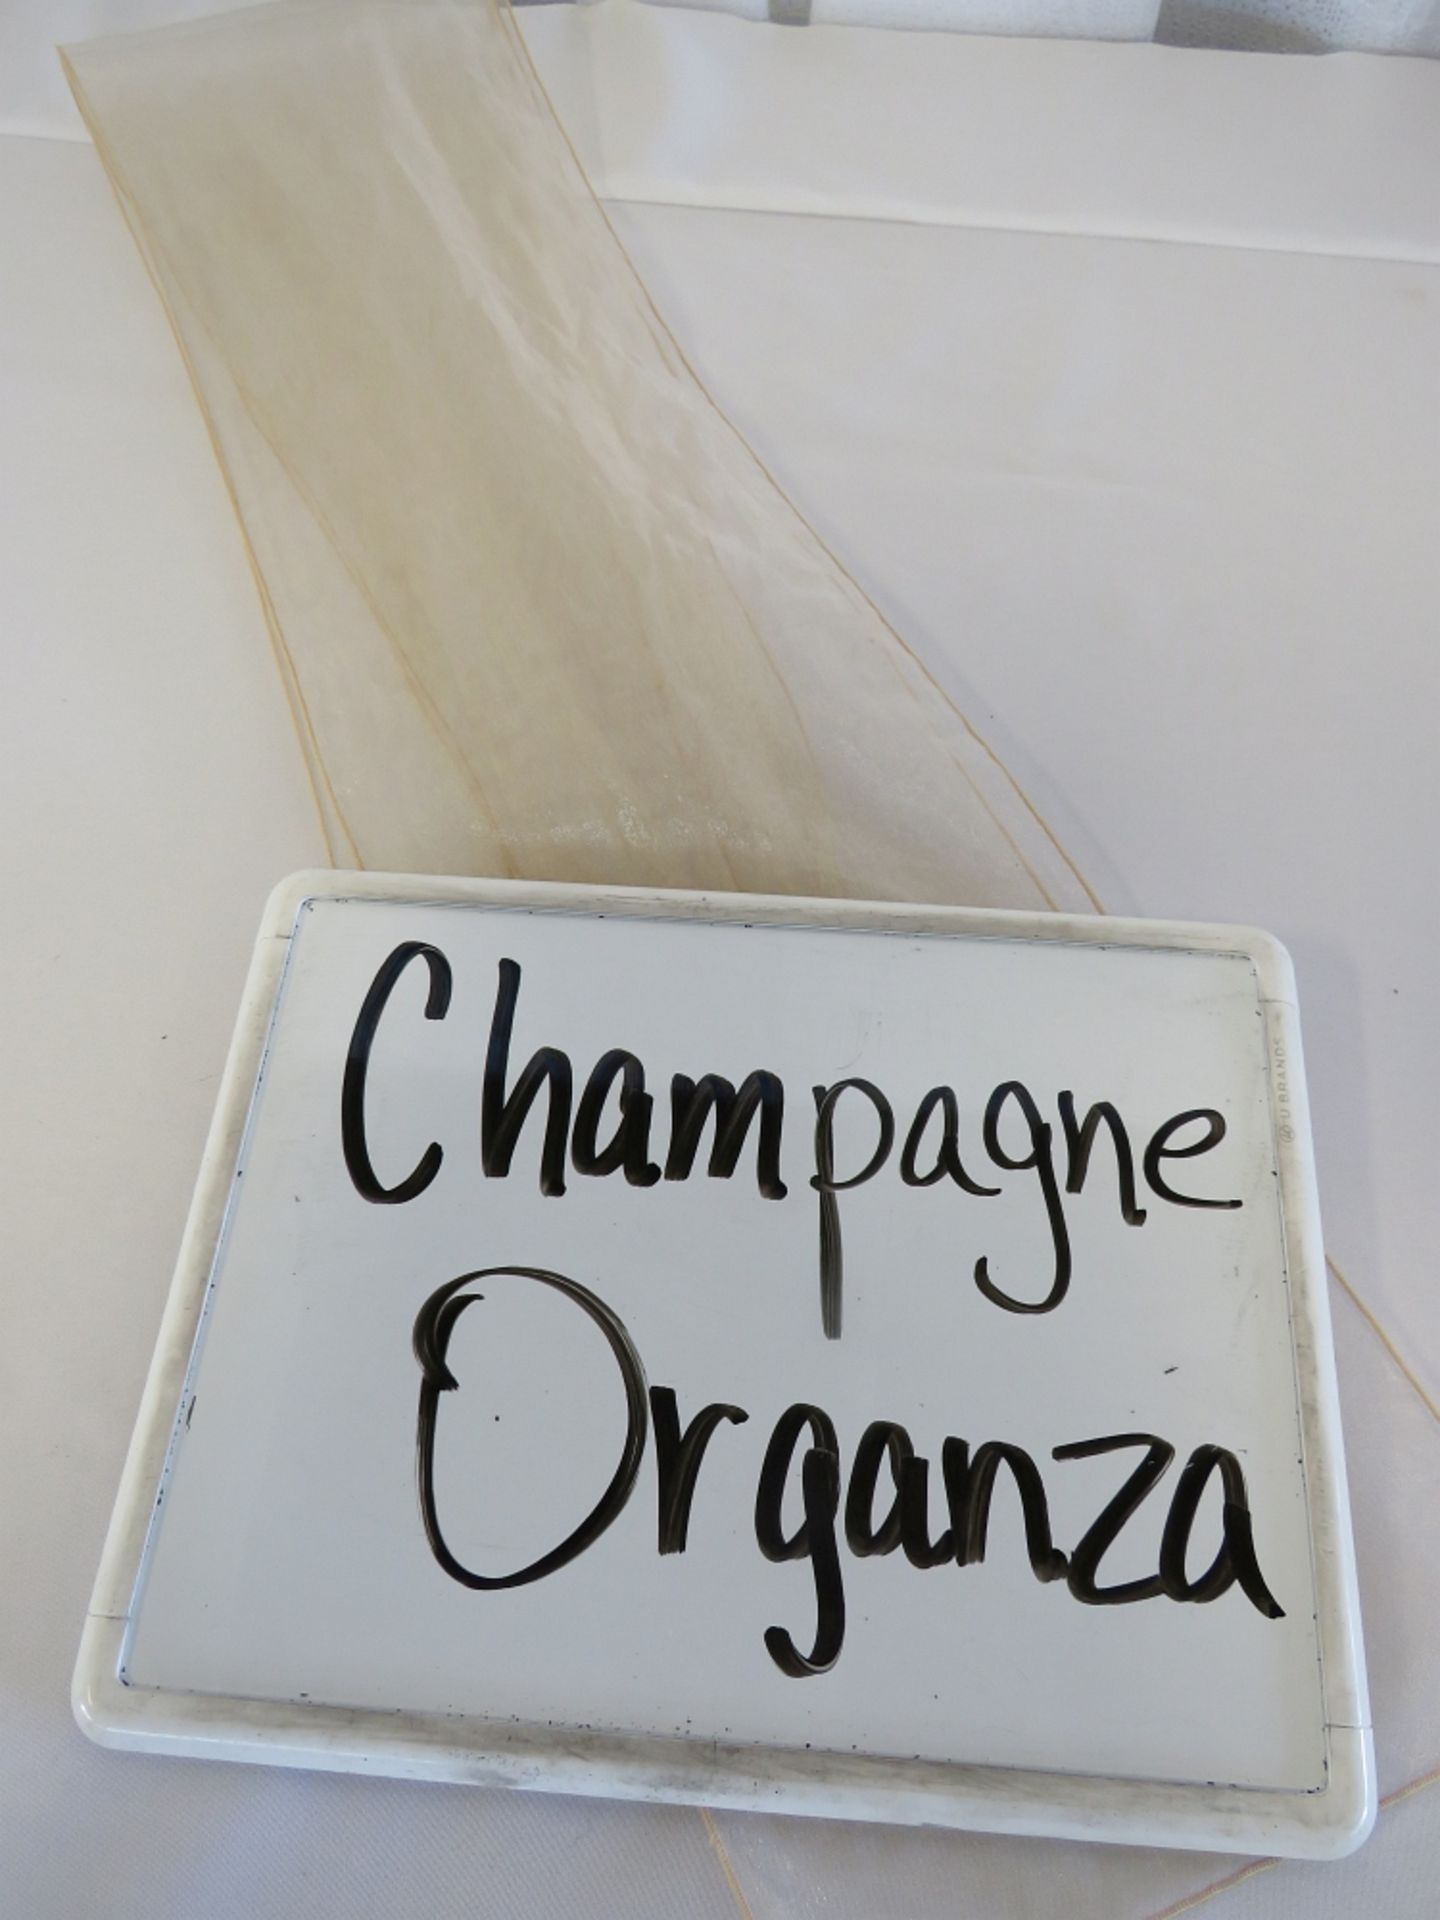 Chair Sash, Organza, Champagne